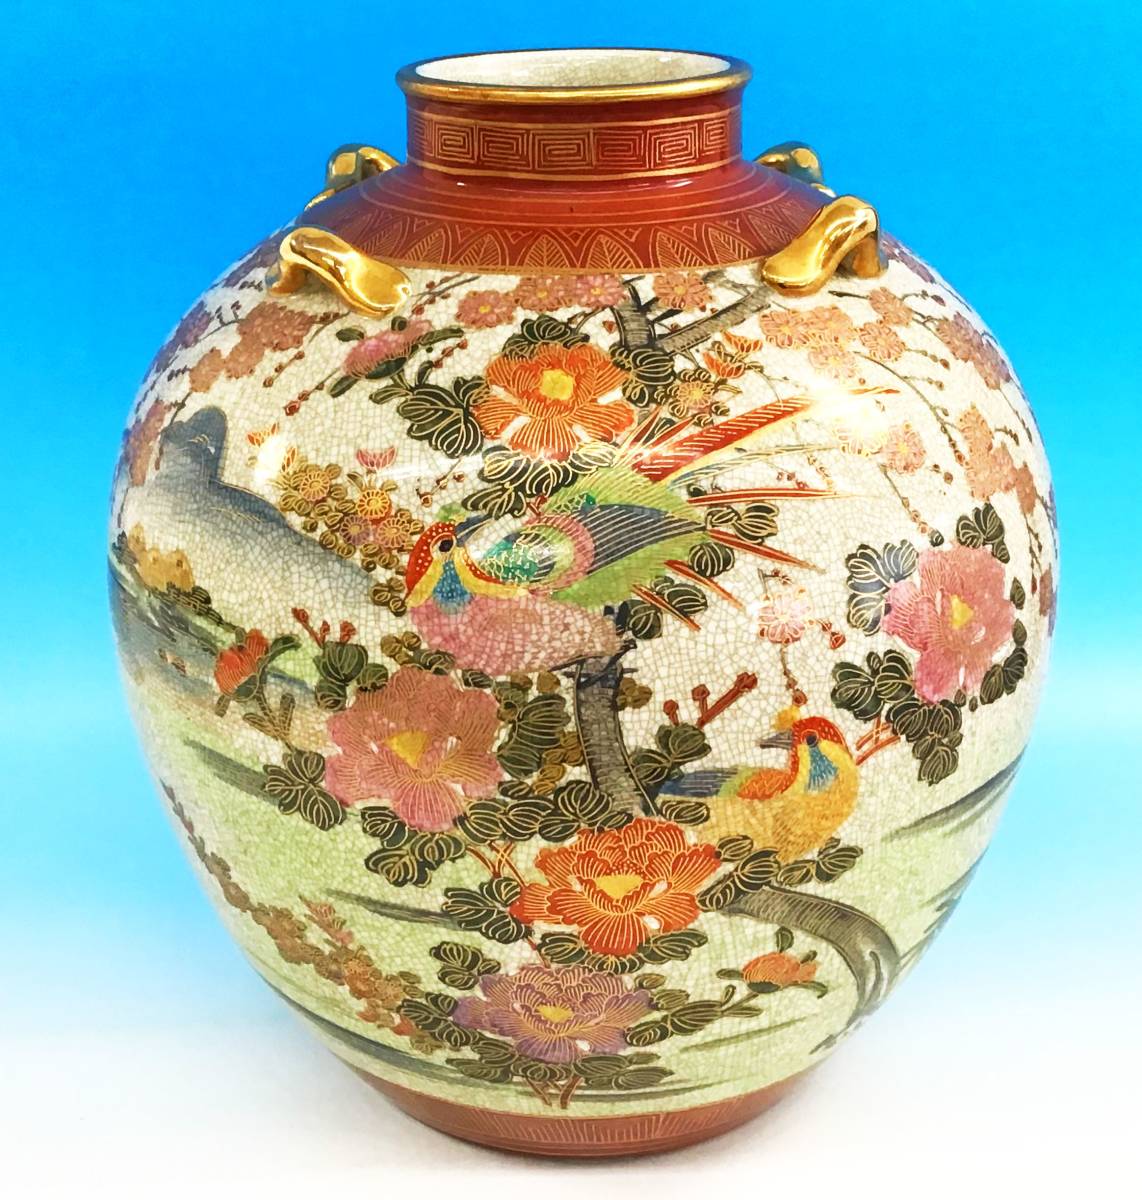 Yahoo!オークション -「花瓶 陶器」(薩摩) (日本の陶磁)の落札相場